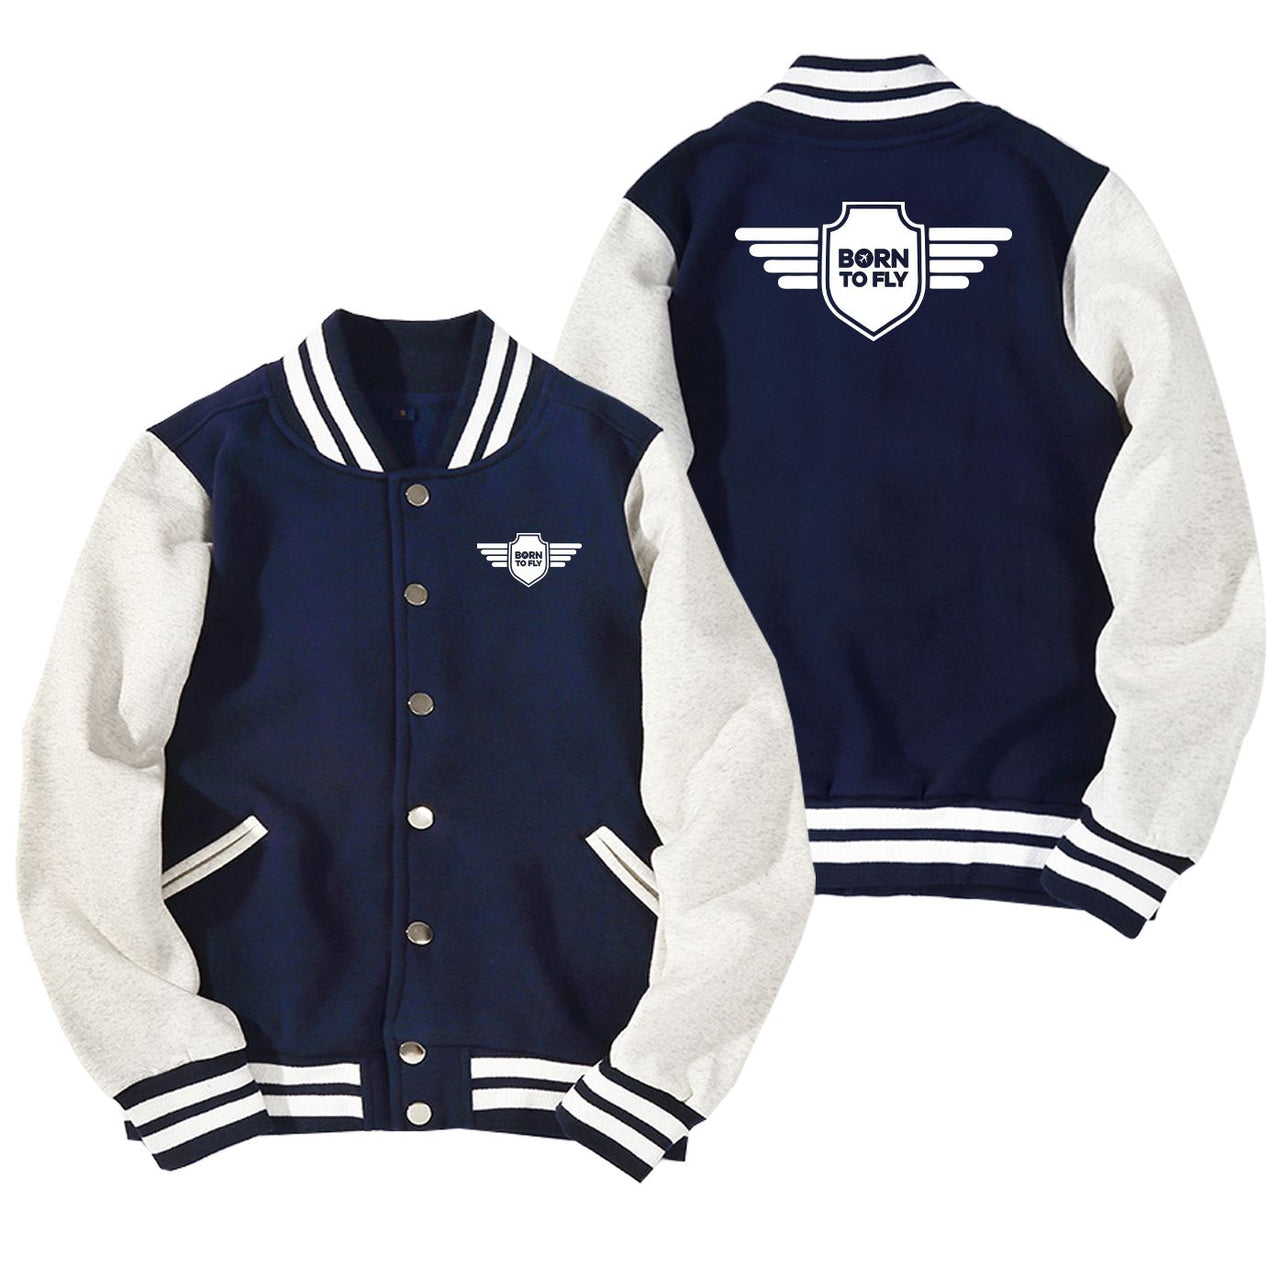 Born To Fly & Badge Designed Baseball Style Jackets